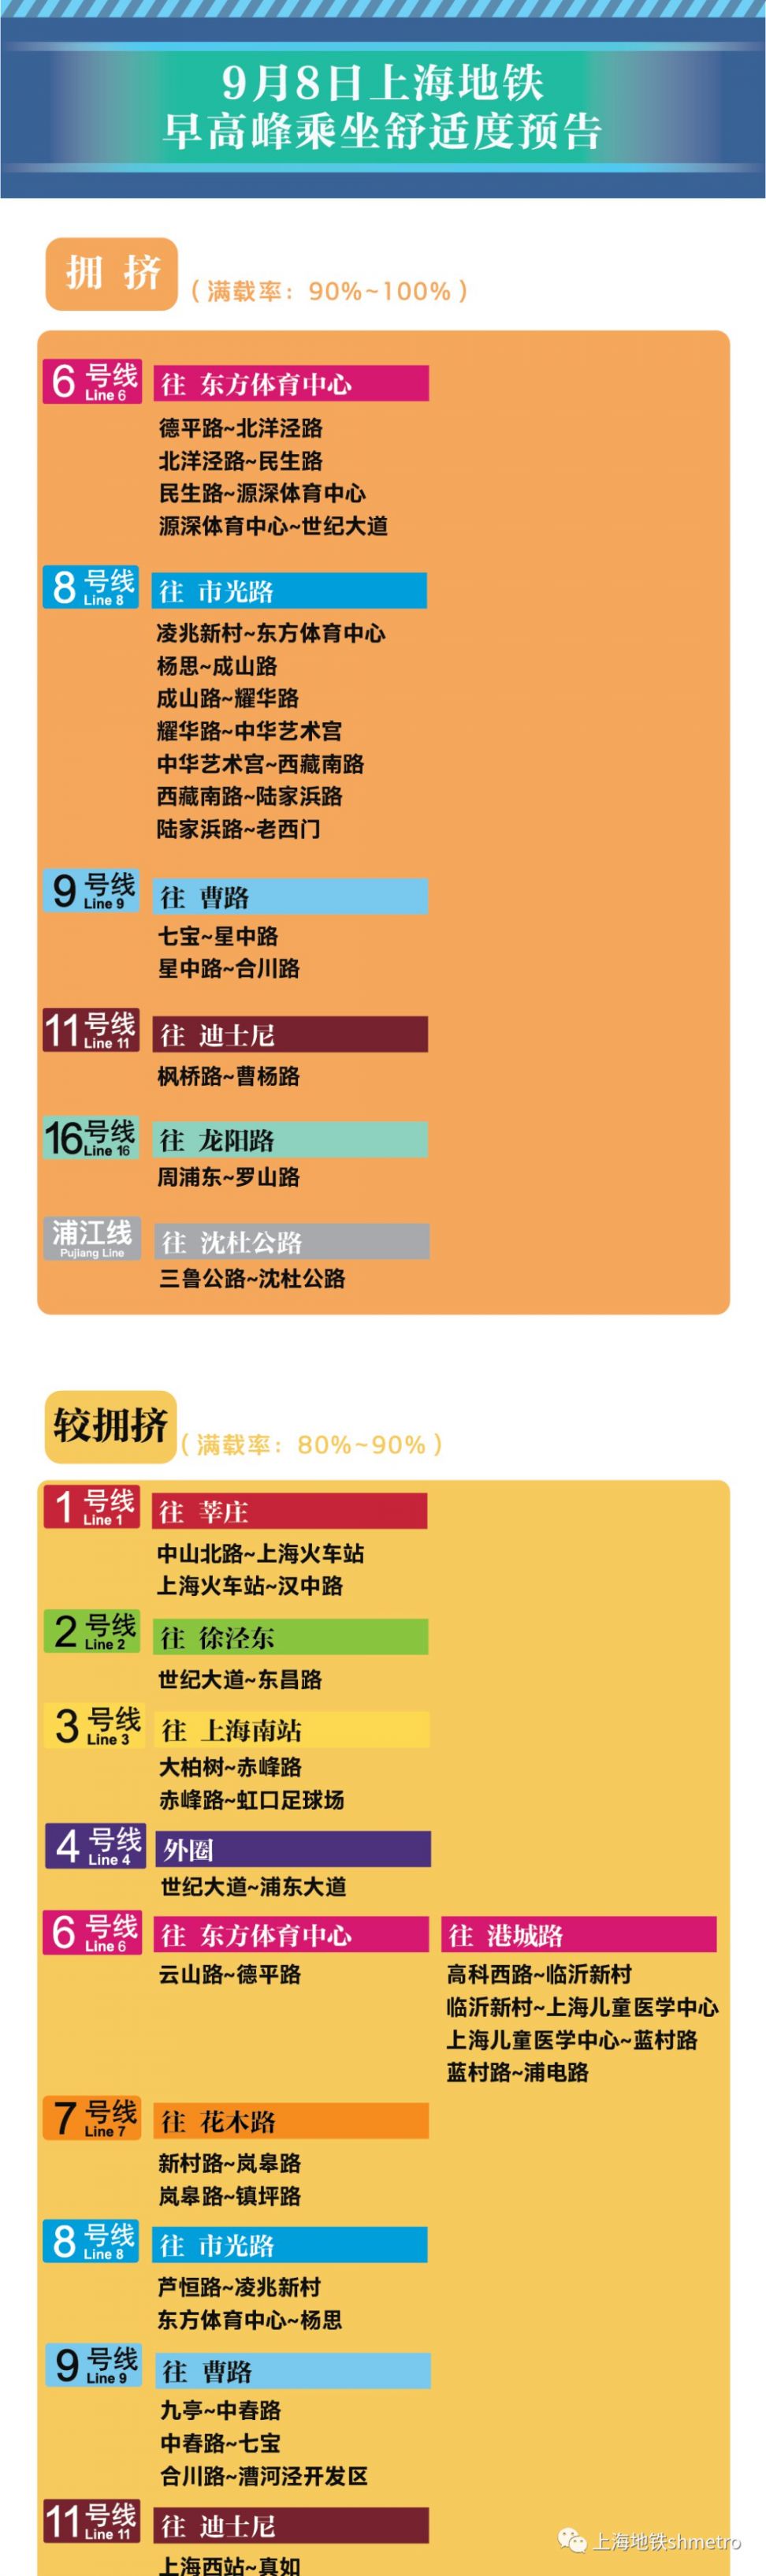 9月8日上海11座地铁站早高峰限流(附舒适度预告)